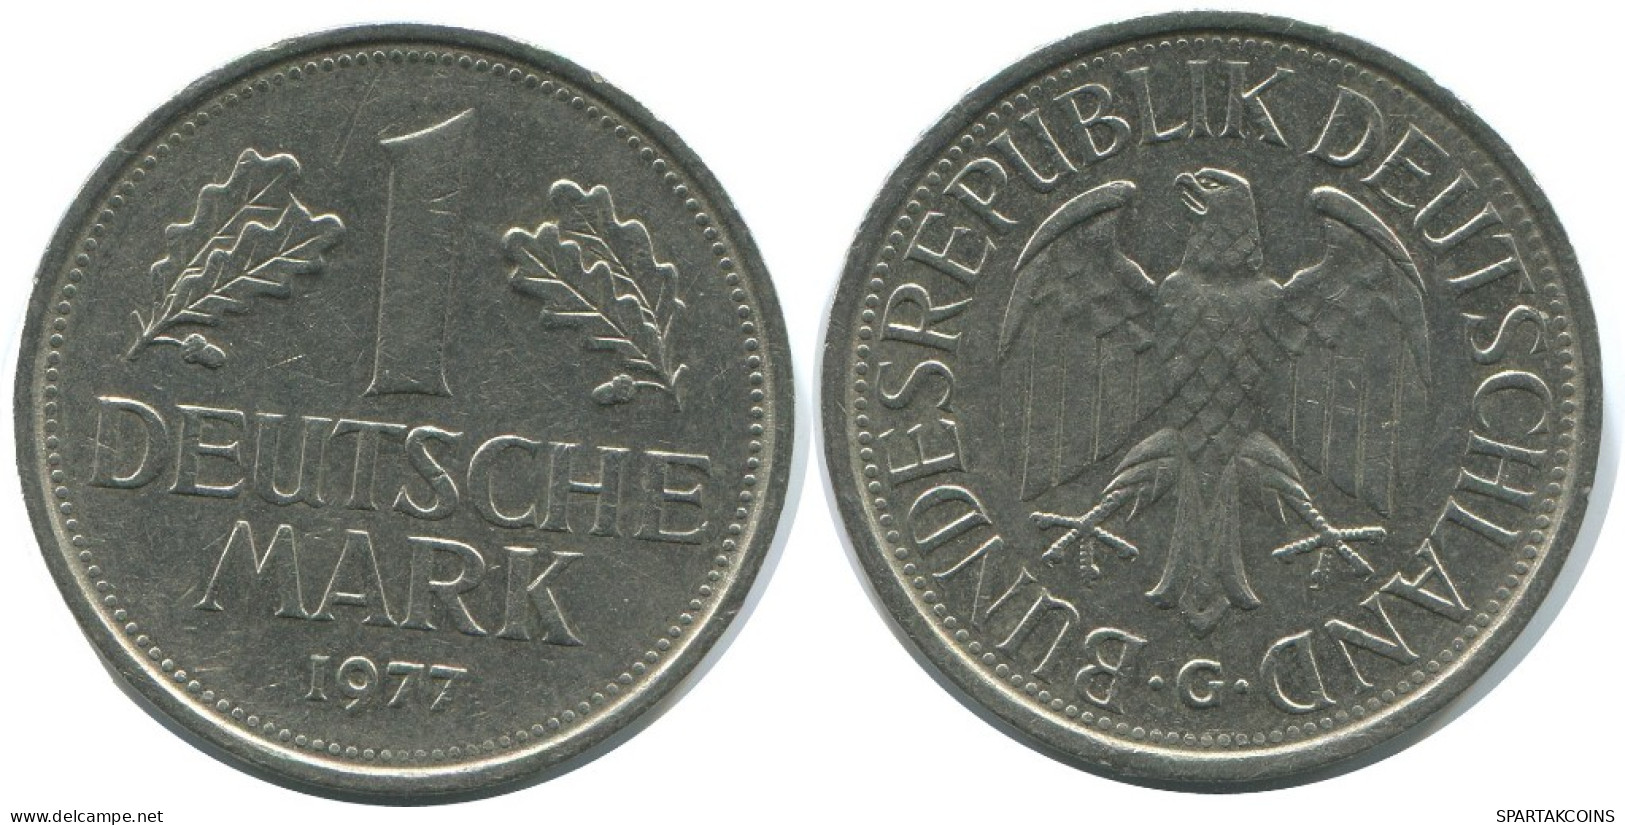 1 DM 1977 G BRD ALEMANIA Moneda GERMANY #AG290.3.E.A - 1 Mark